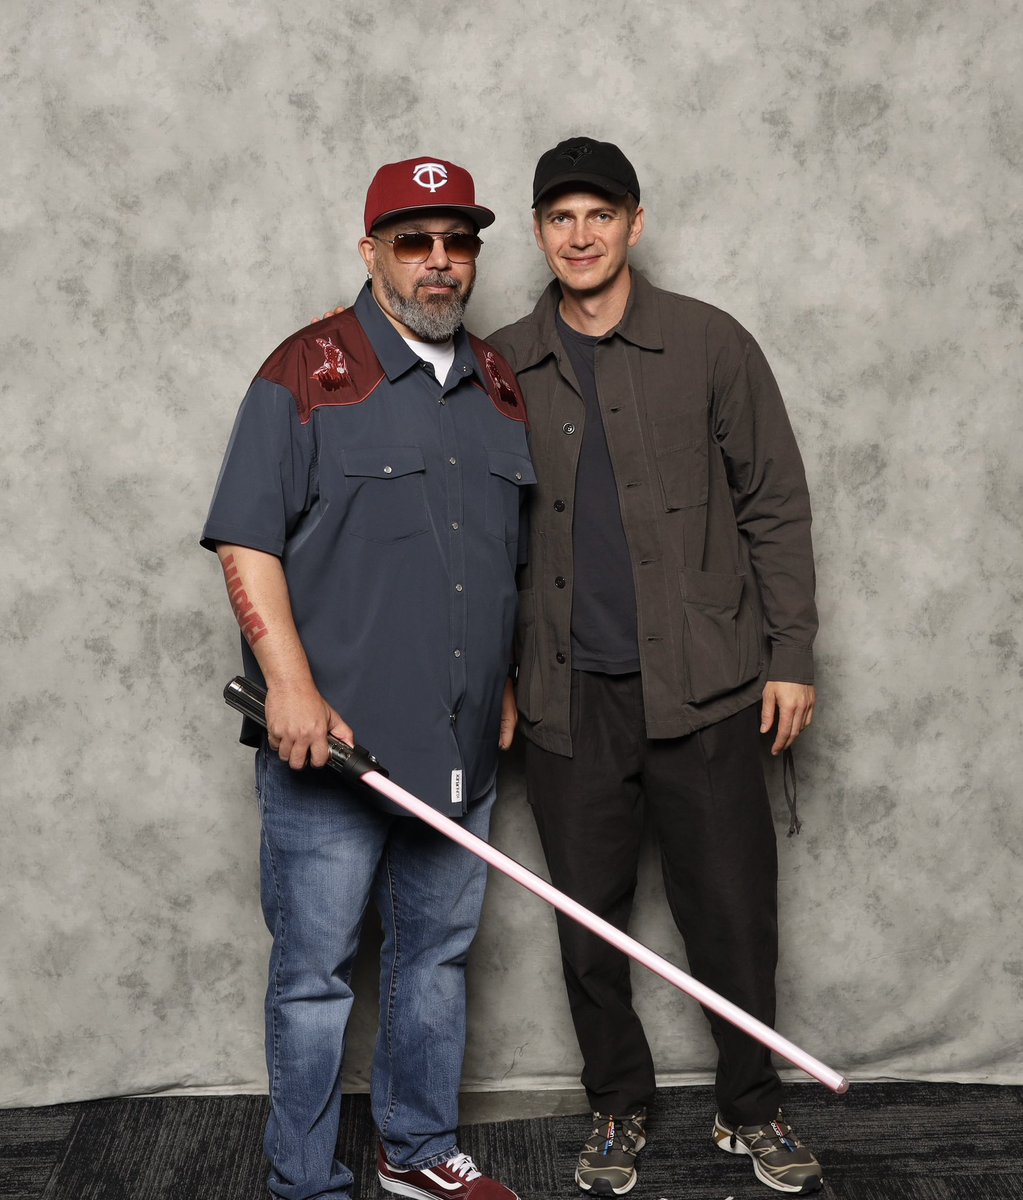 'Darth Vader' Hayden Christensen trying to convince me the Dark Side is not so bad. #starwars #haydenchristensen